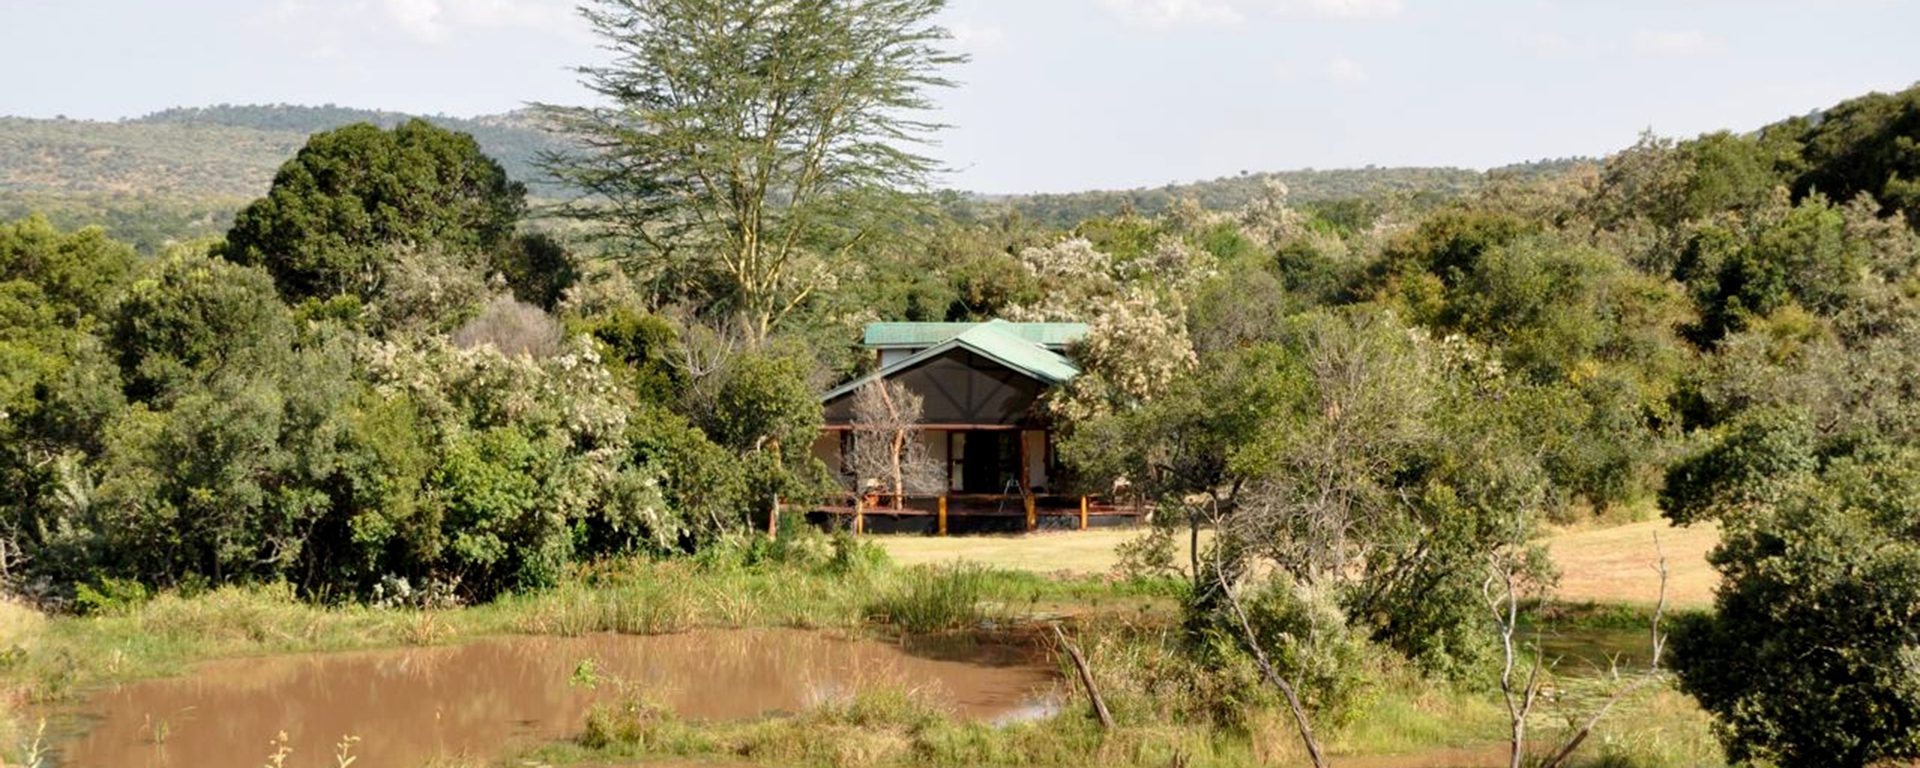 acacia-mara-bush-house_kenya_05